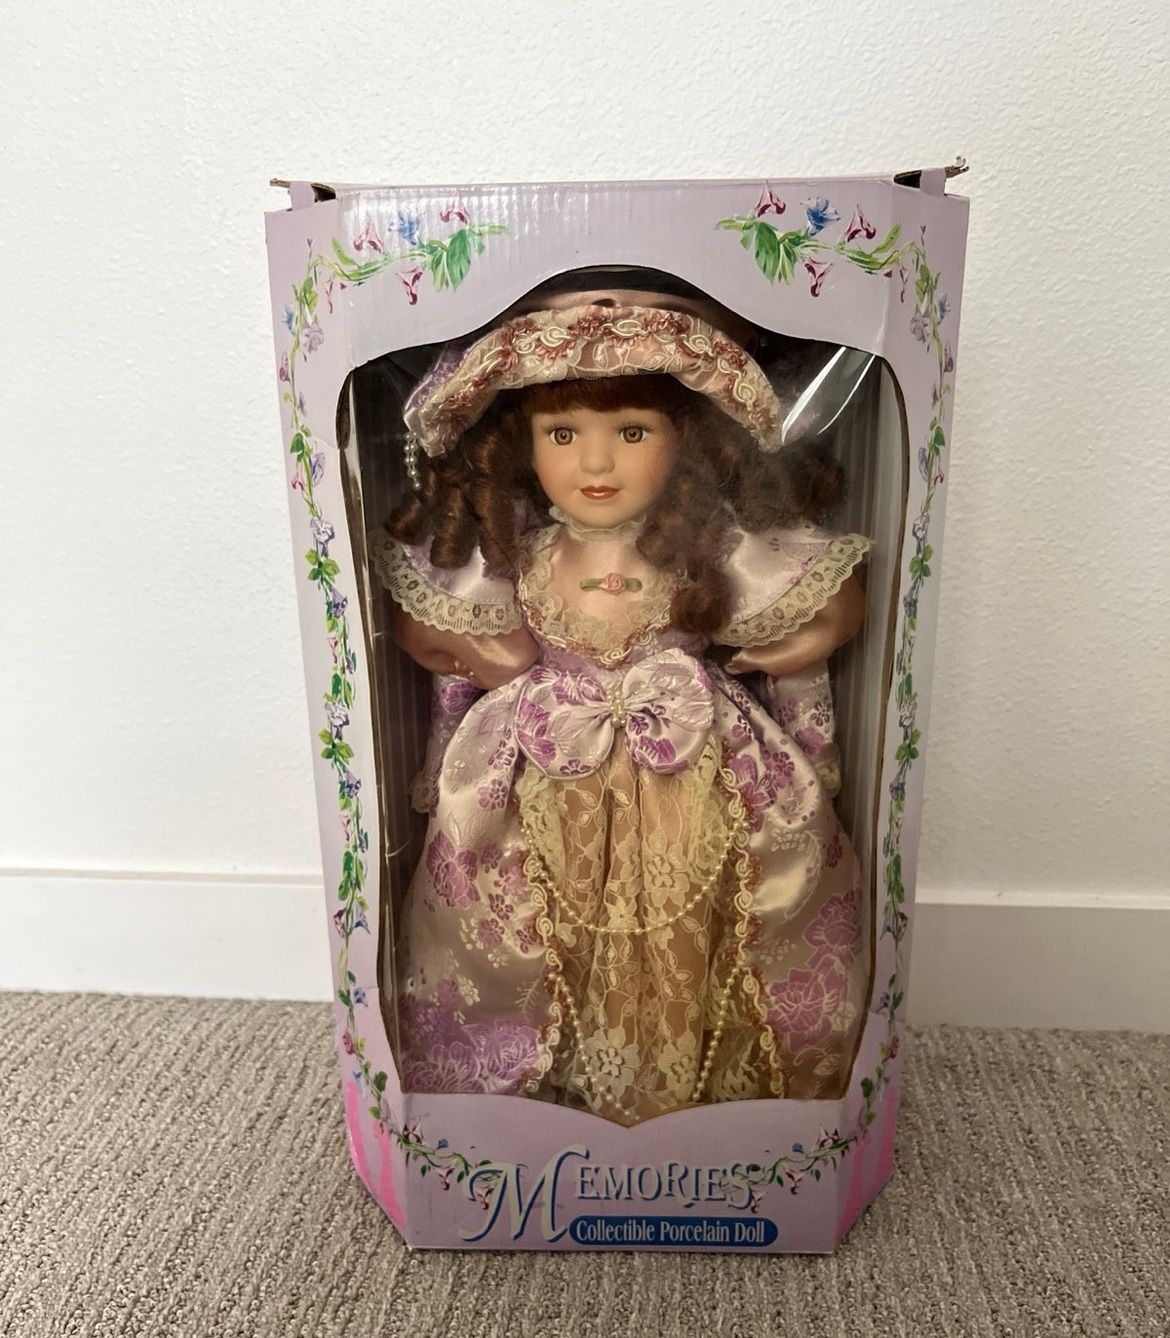 Rare Memories Collectible Porcelain Doll